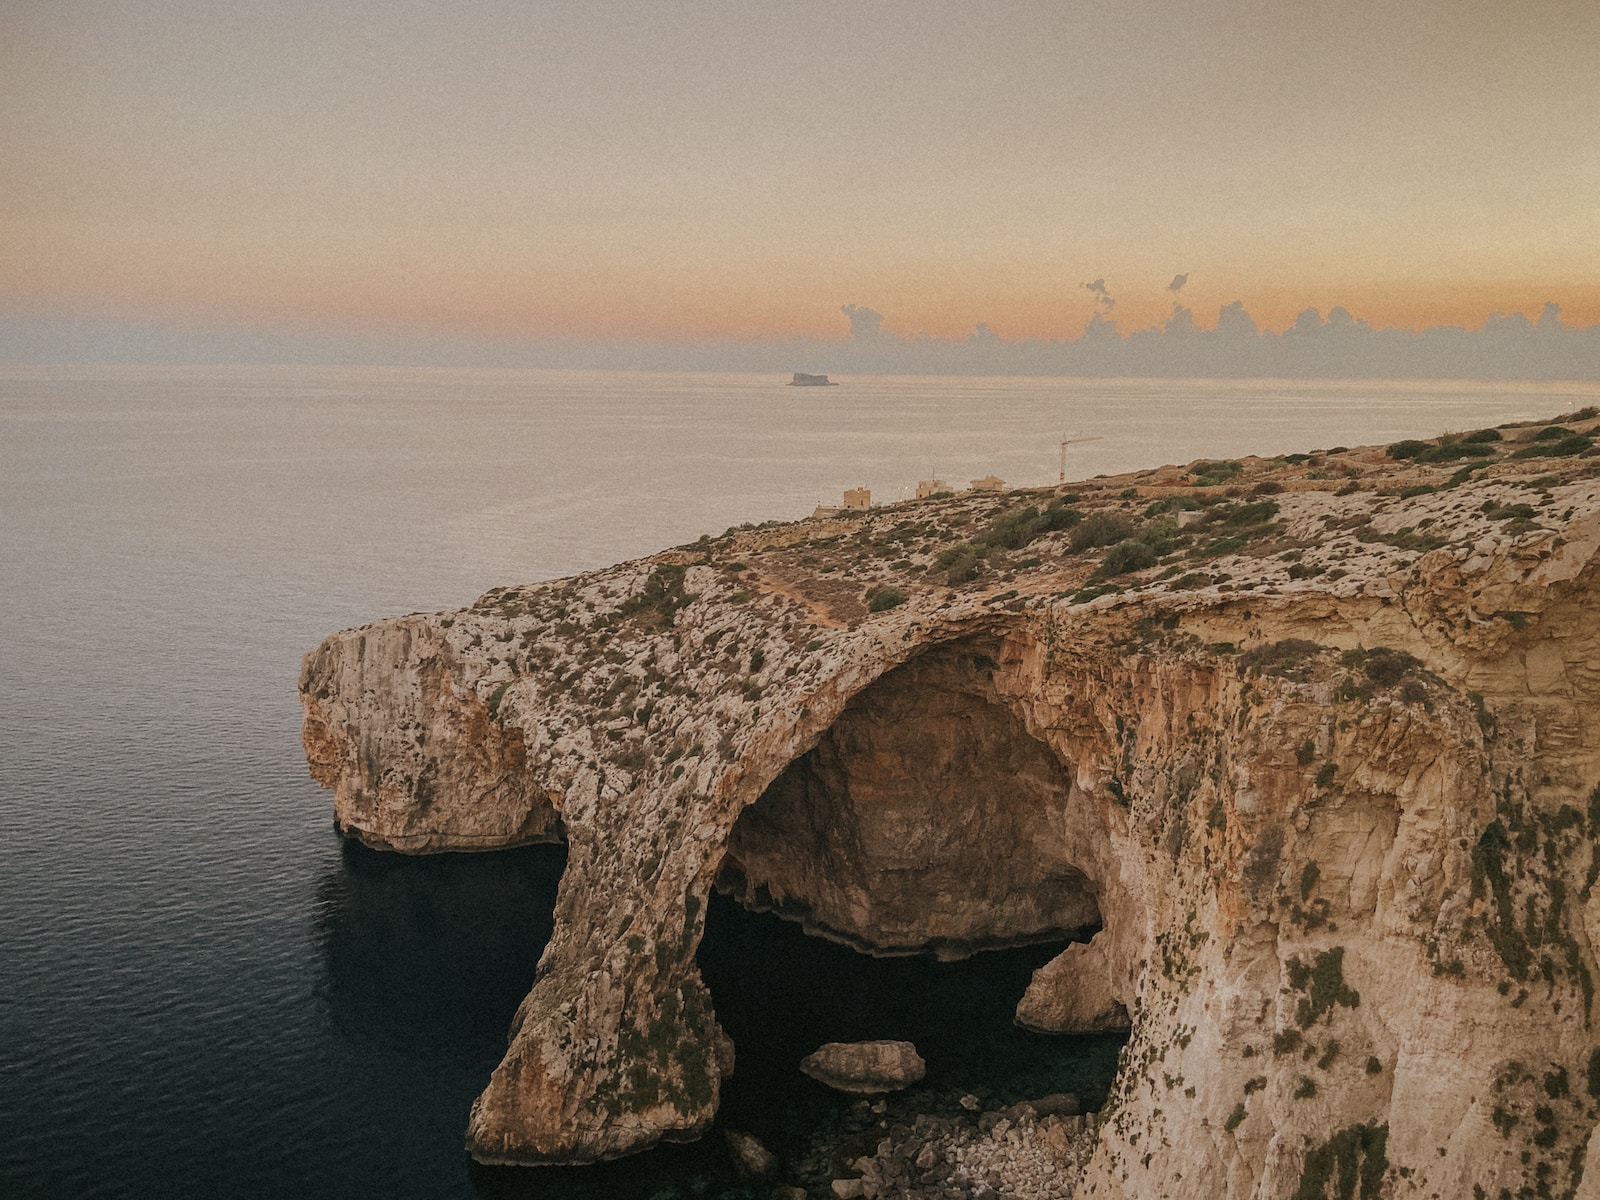 Wyspa Malta Pogoda, Wyspa Malta Klimat, Wyspa Malta Wczasy, Wyspa Malta Wakacje, Wyspa Malta Atrakcje, Wyspa Malta Hotele, Wyspa Malta Plaże